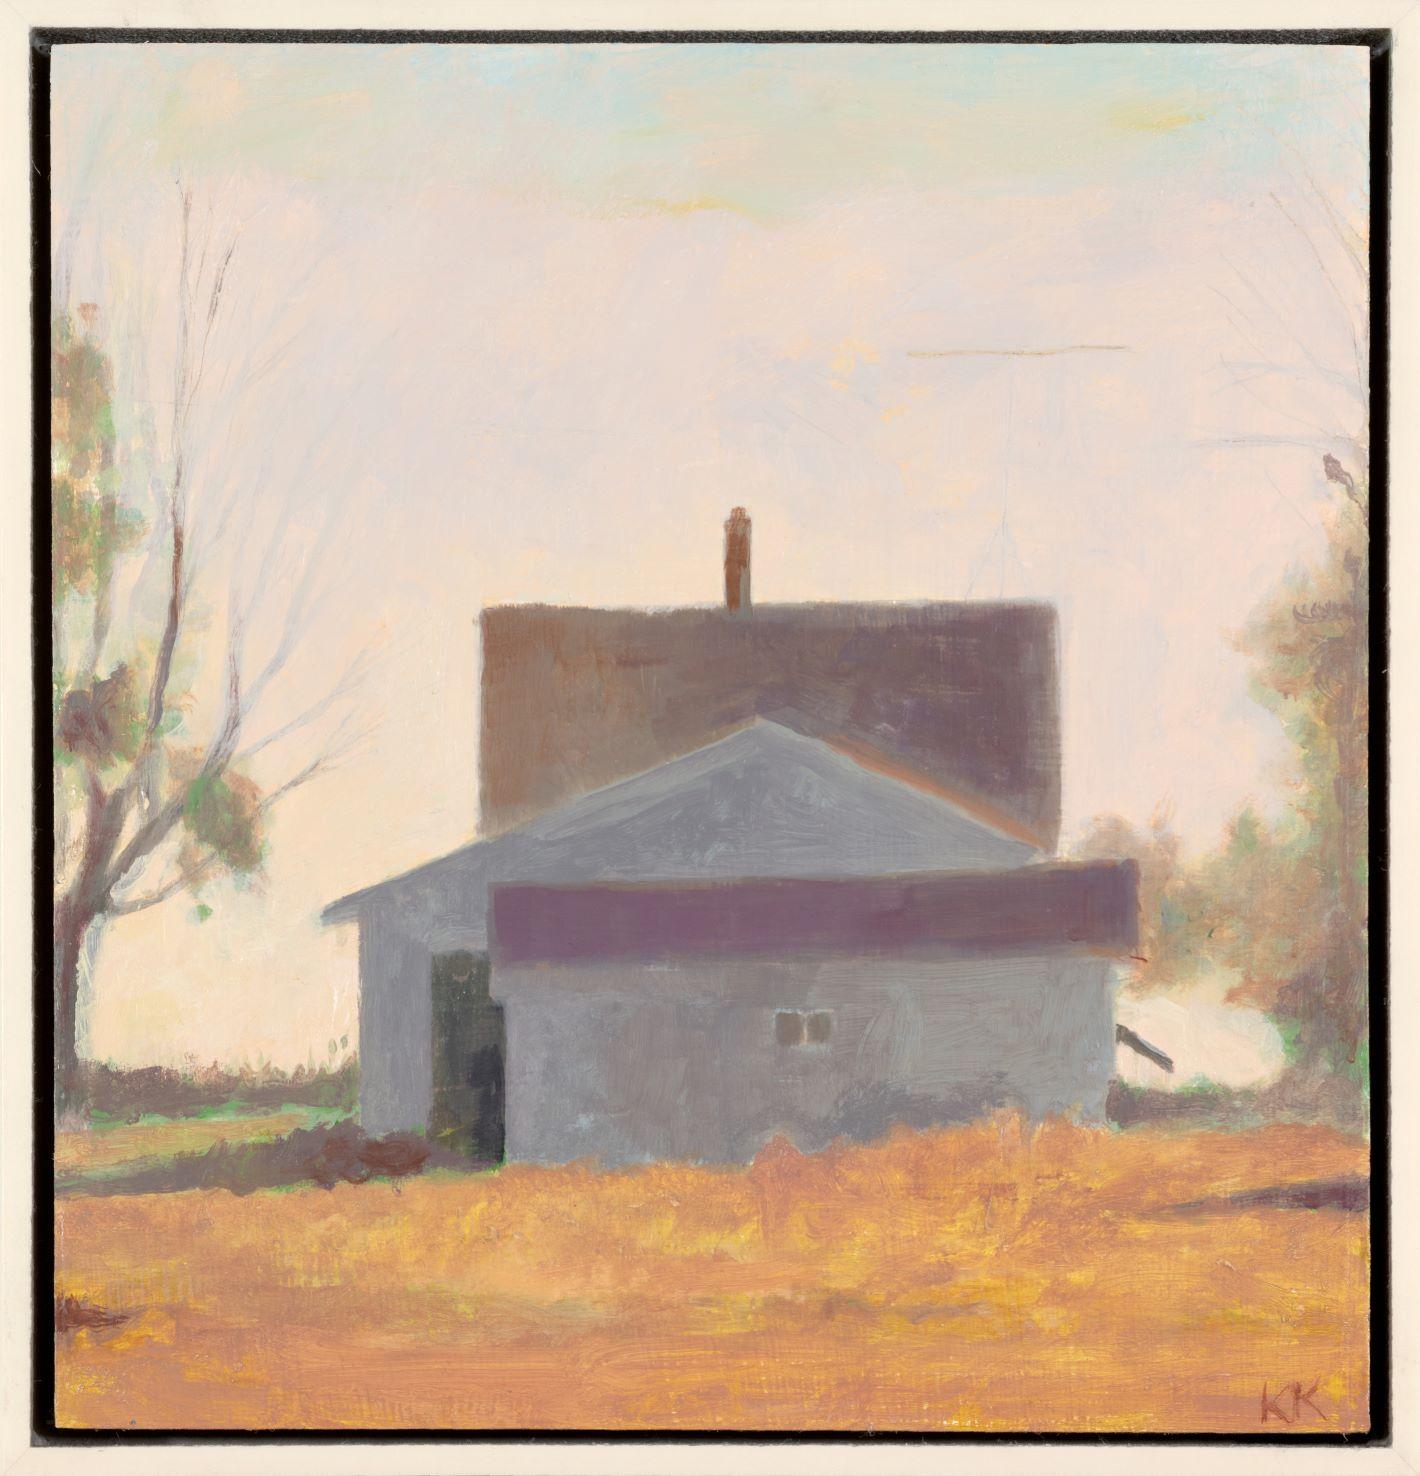 "Distant House" est une peinture à l'huile originale réalisée par l'artiste Kevin Knopp, basé dans le Wisconsin. Connu pour ses paysages lyriques et ses natures mortes sensibles, il est influencé par ce que l'artiste appelle "l'étrange et le négligé